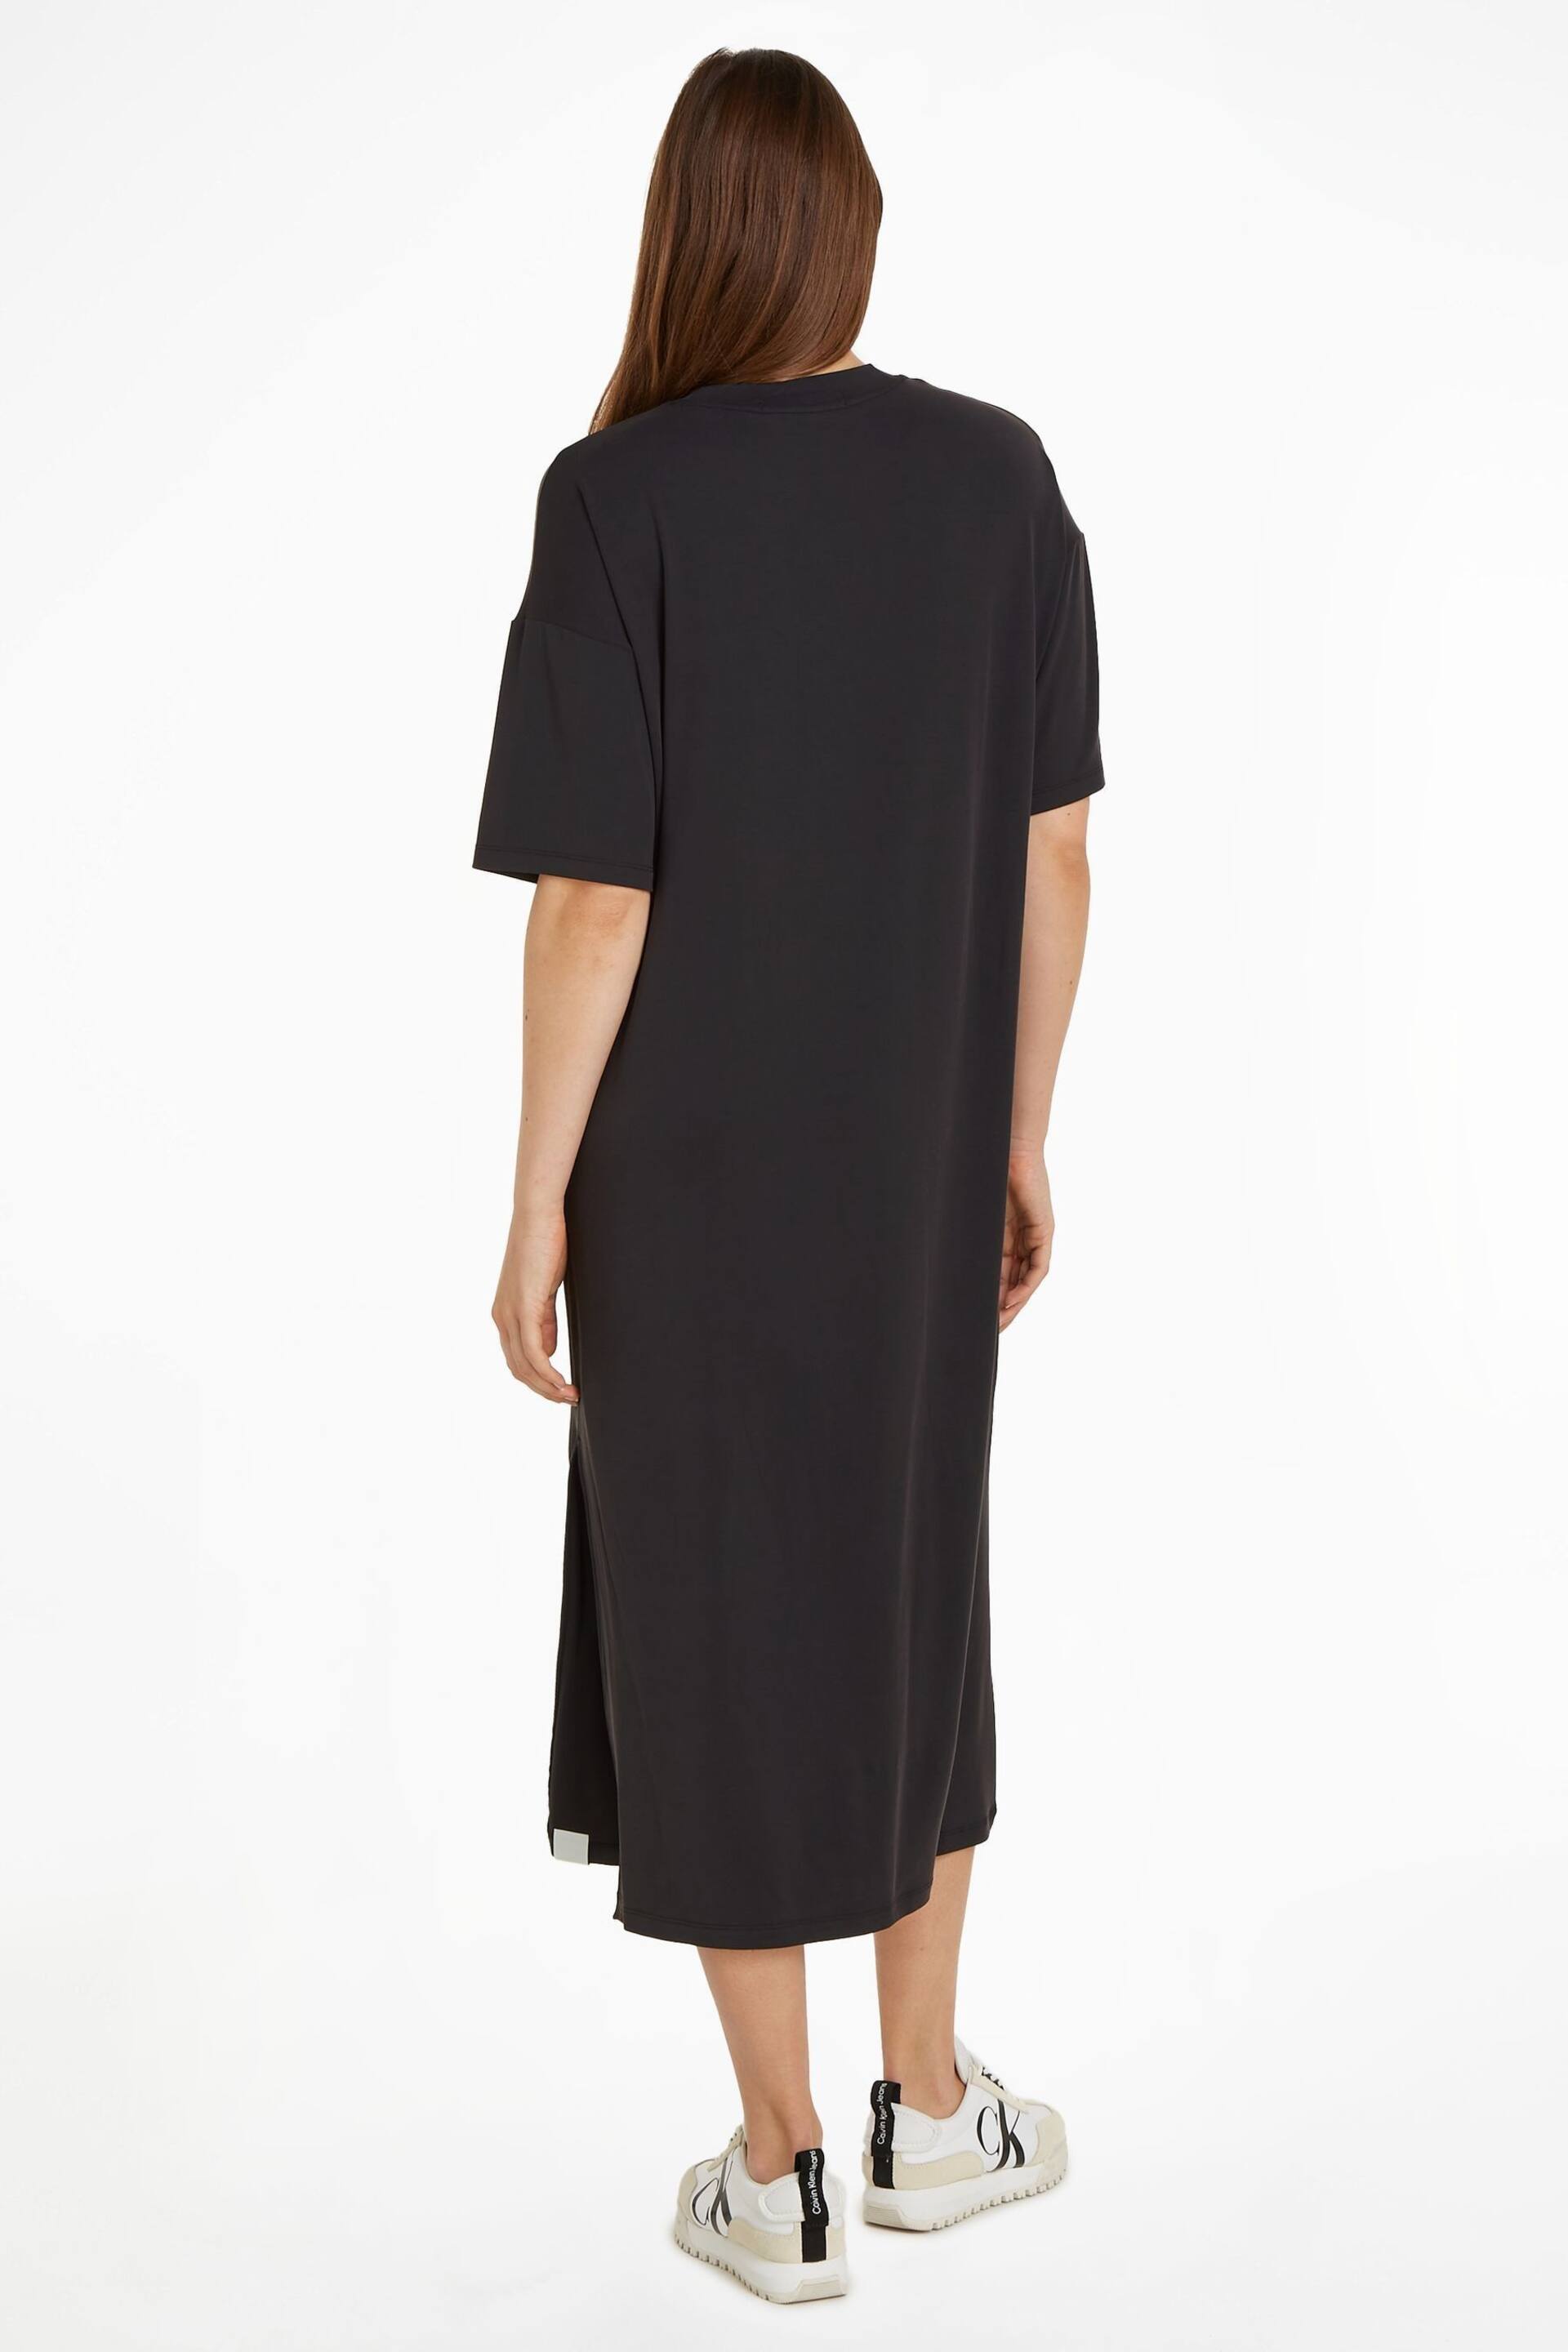 Calvin Klein Black T-Shirt Dress - Image 2 of 6